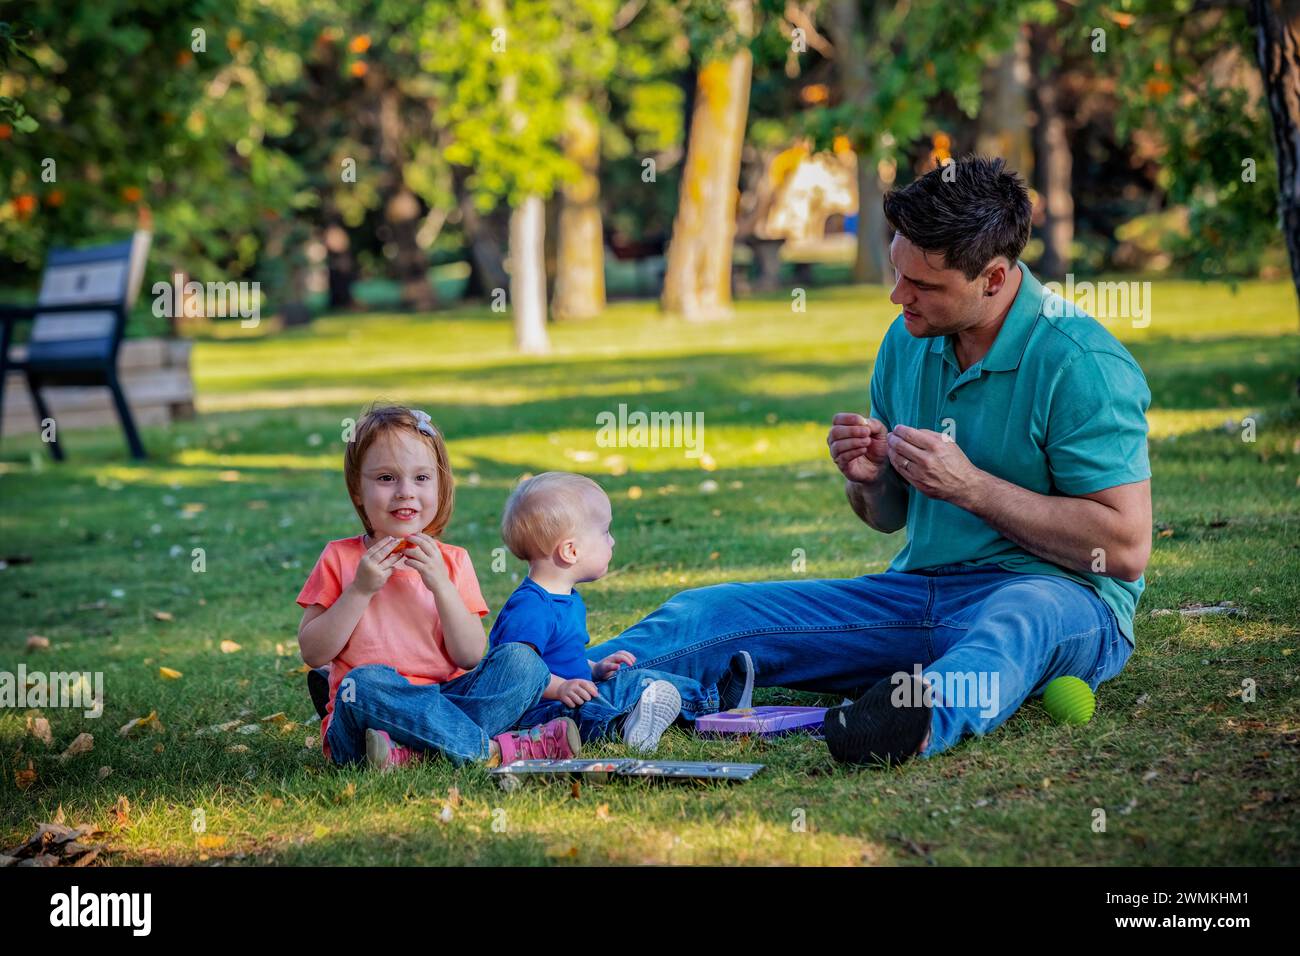 Père passant du temps de qualité et utilisant la langue des signes avec son jeune fils qui a le syndrome de Down, tandis que sa fille joue le long, dans un parc de la ville durin... Banque D'Images